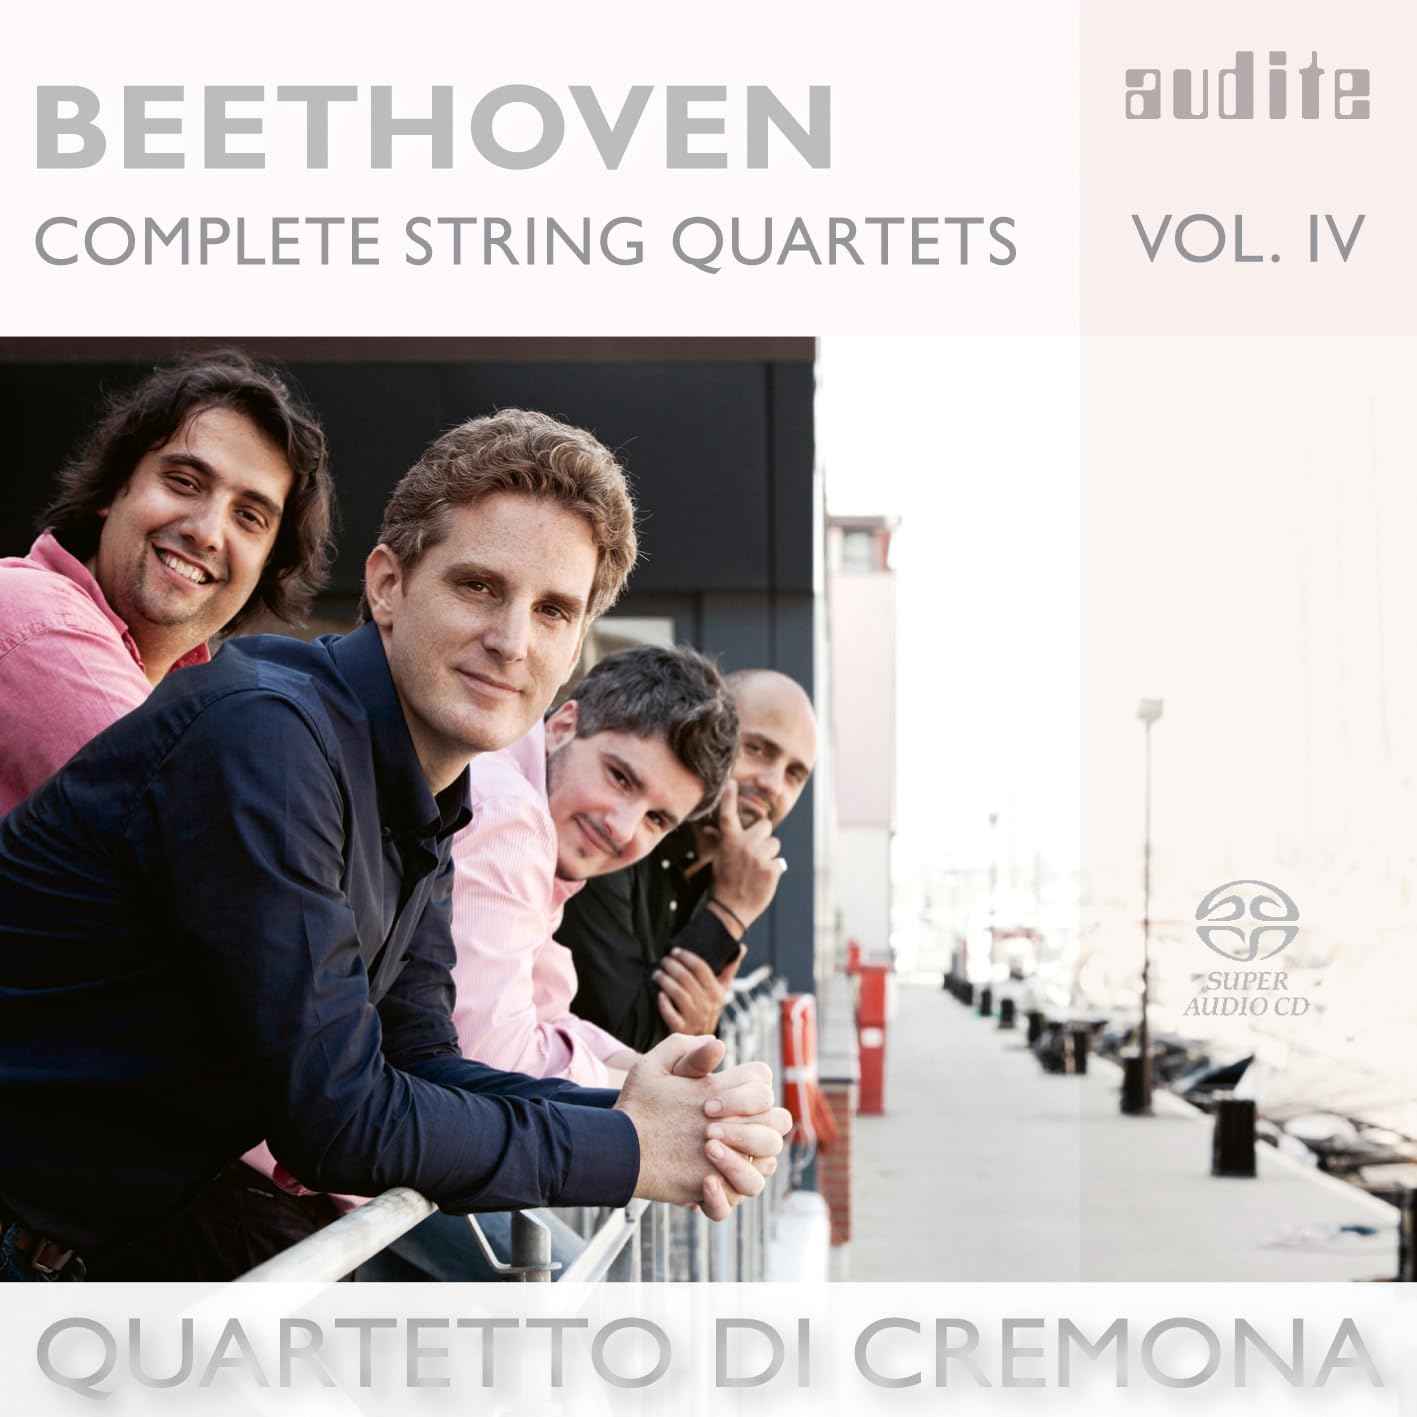 Beethoven Complete String Quartets Vol. IV